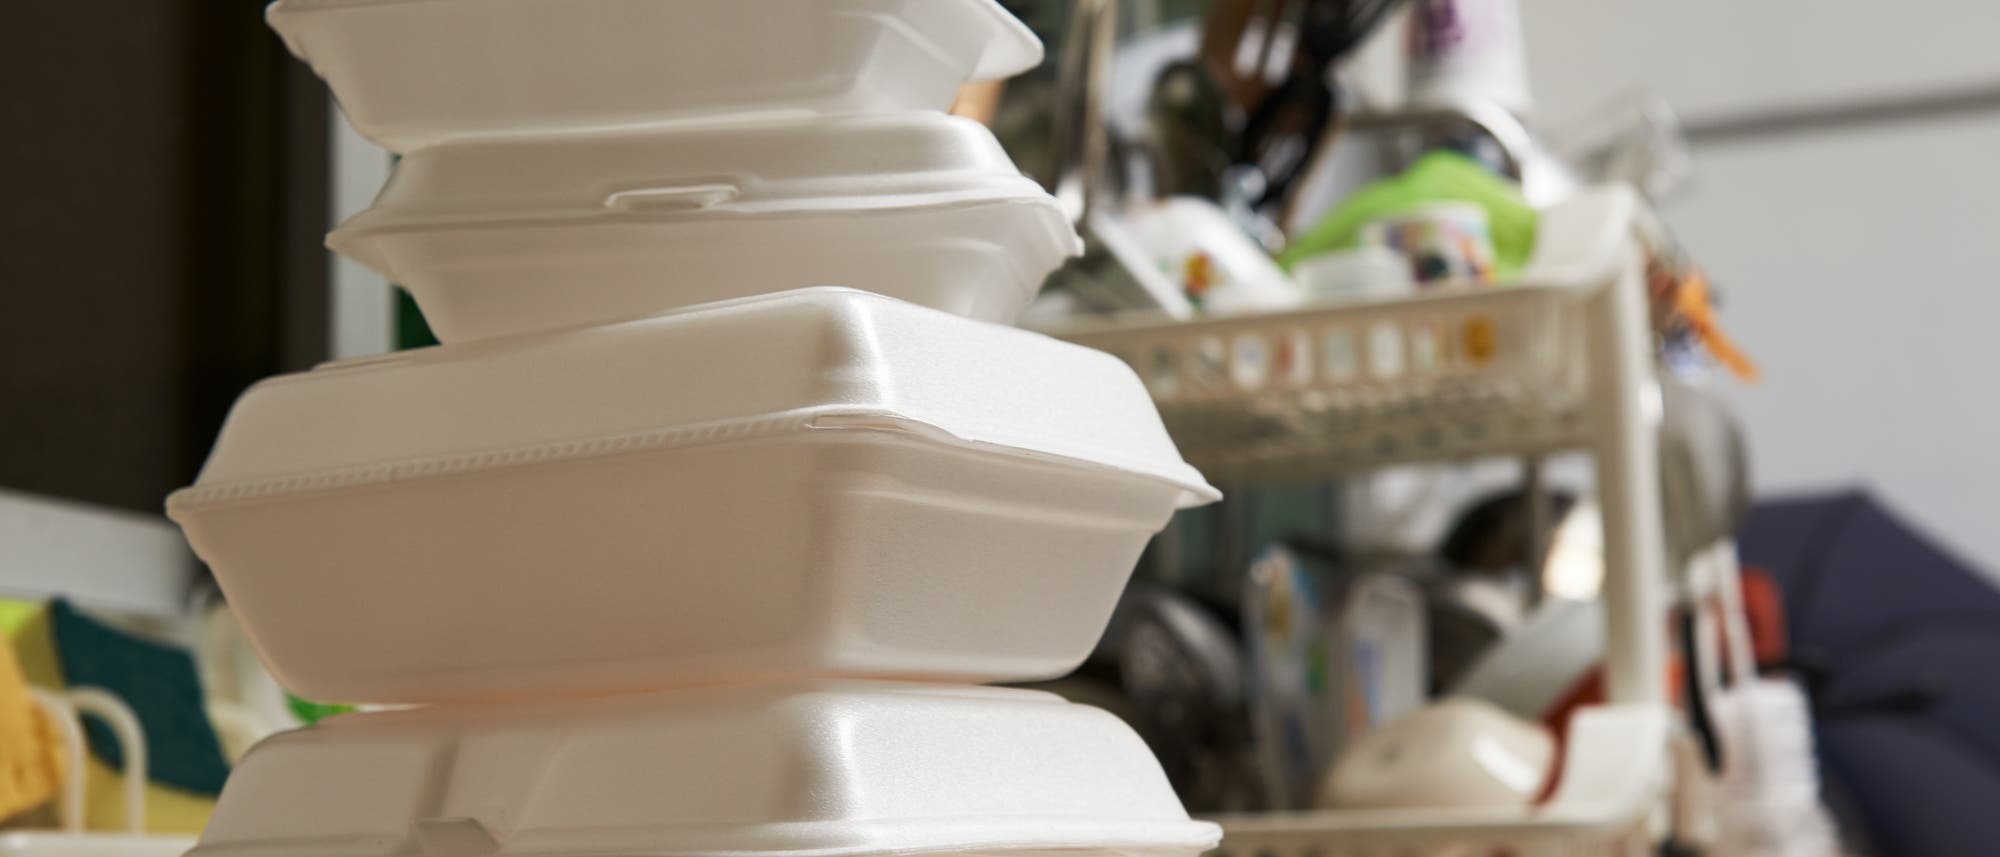 Styroporverpackungen von gelieferten Essen in einer Küche, im Hintergrund schmutziges Geschirr.